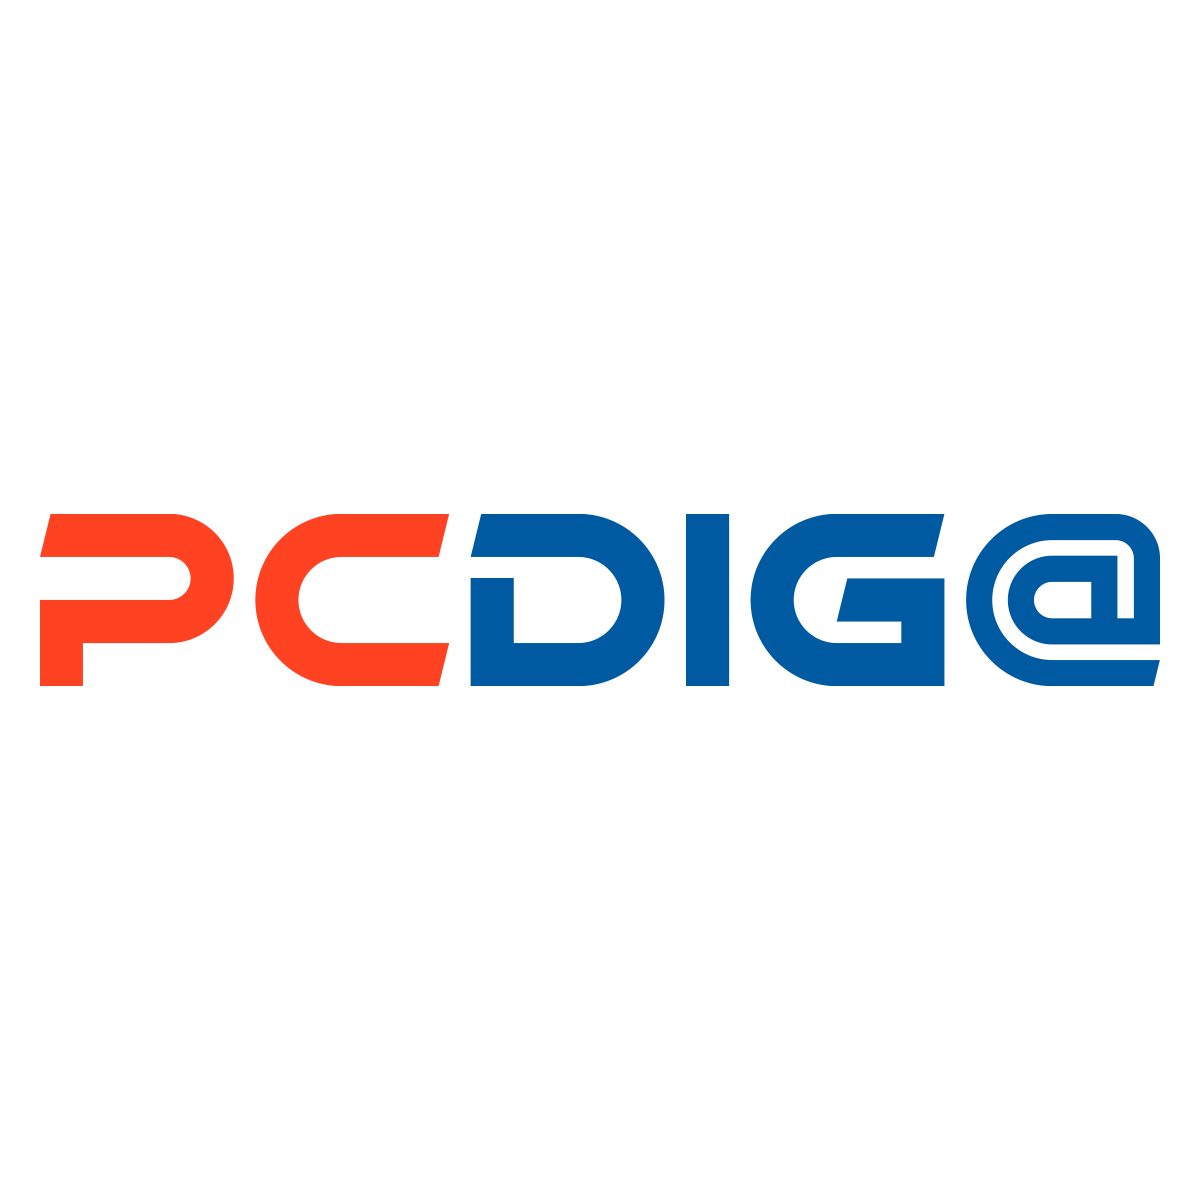 PC DIGA